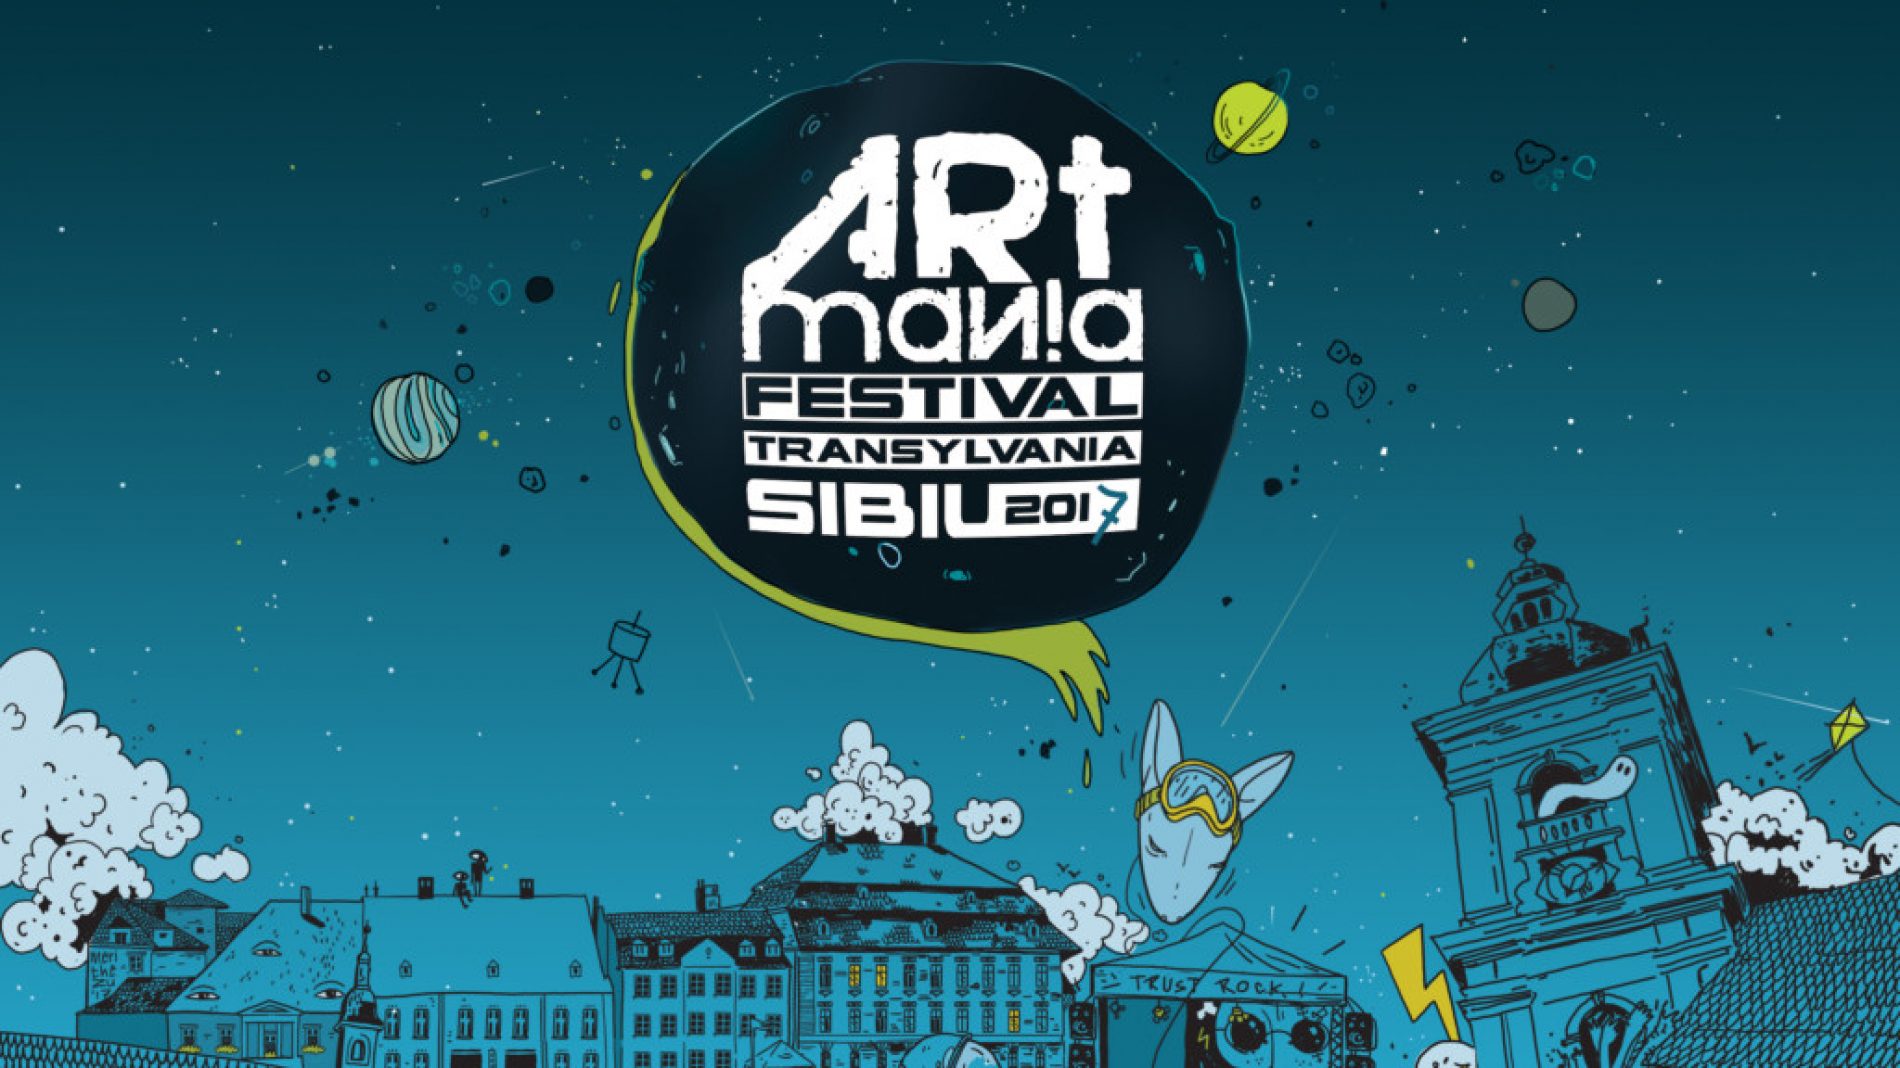 Tarja, Beyond the Black și Walkways – Noi nume confirmate la festivalul ARTmania